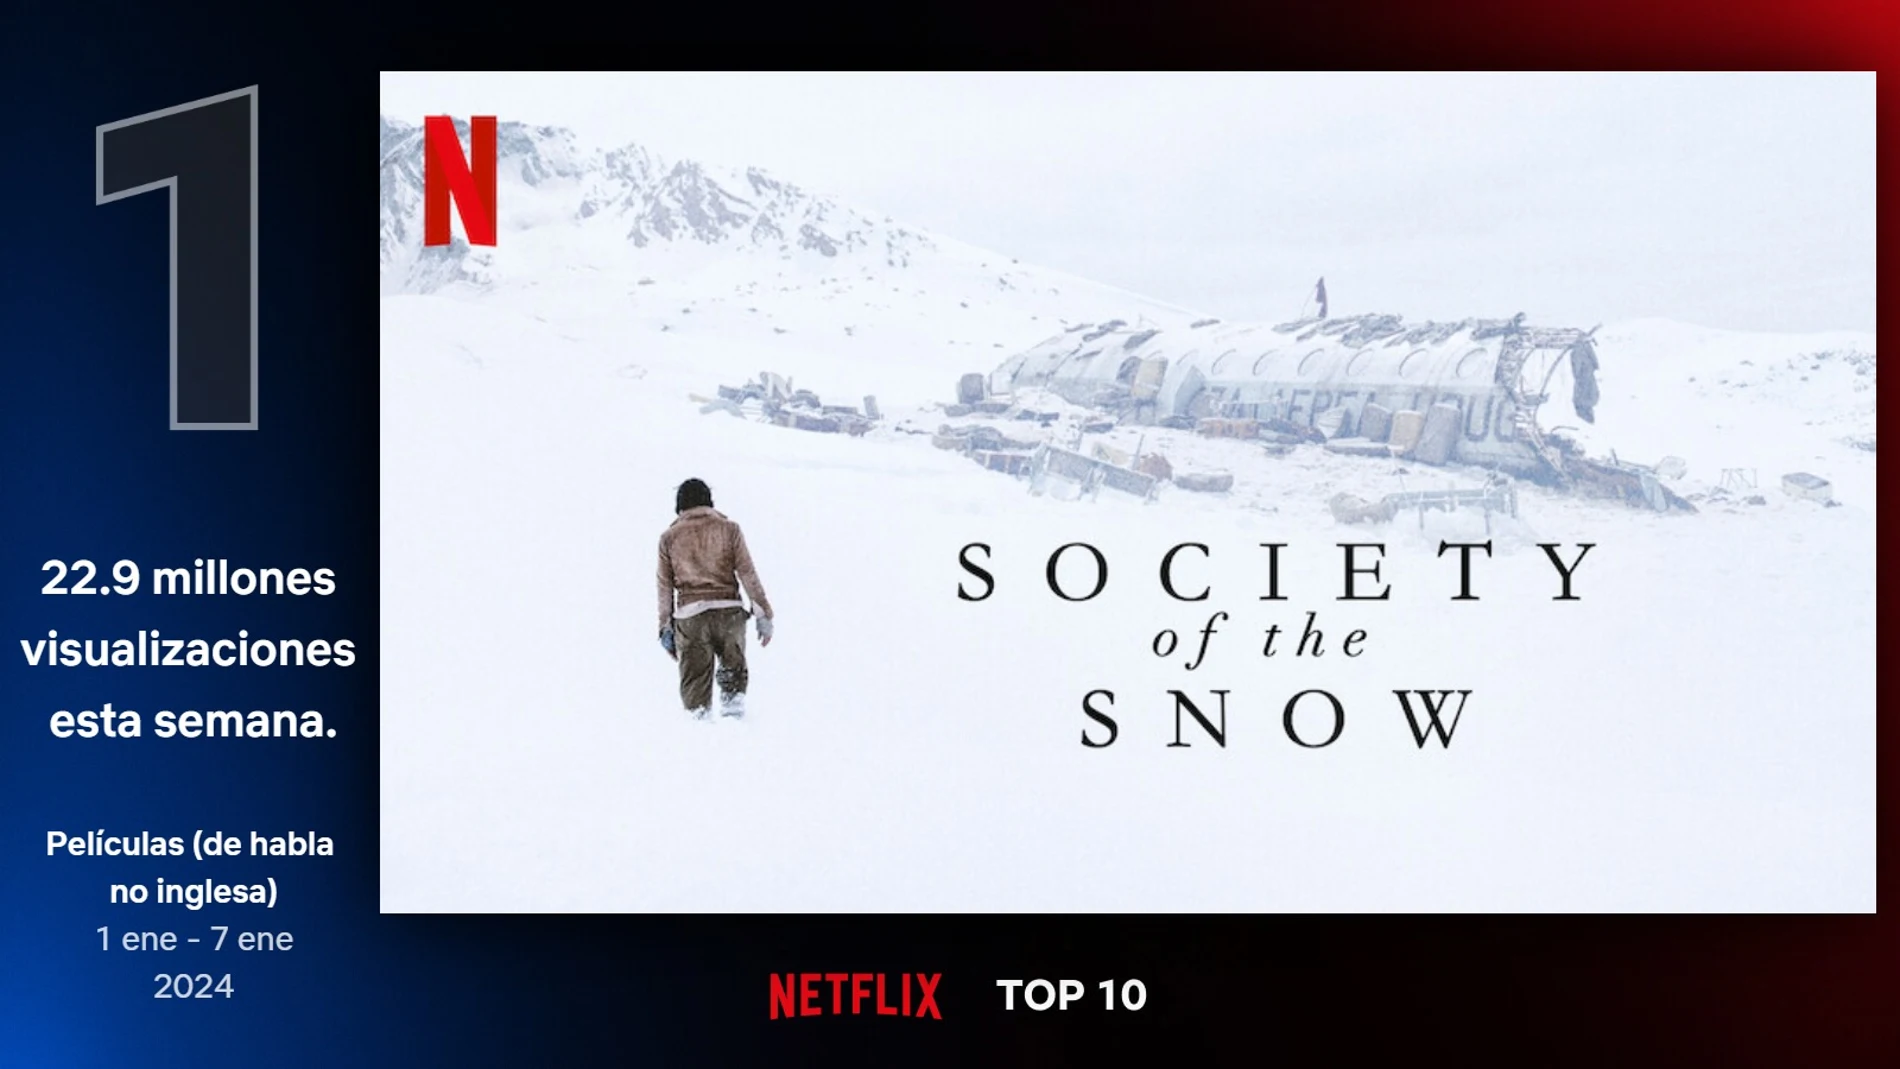 La historia real de La sociedad de la nieve, la película de Netflix